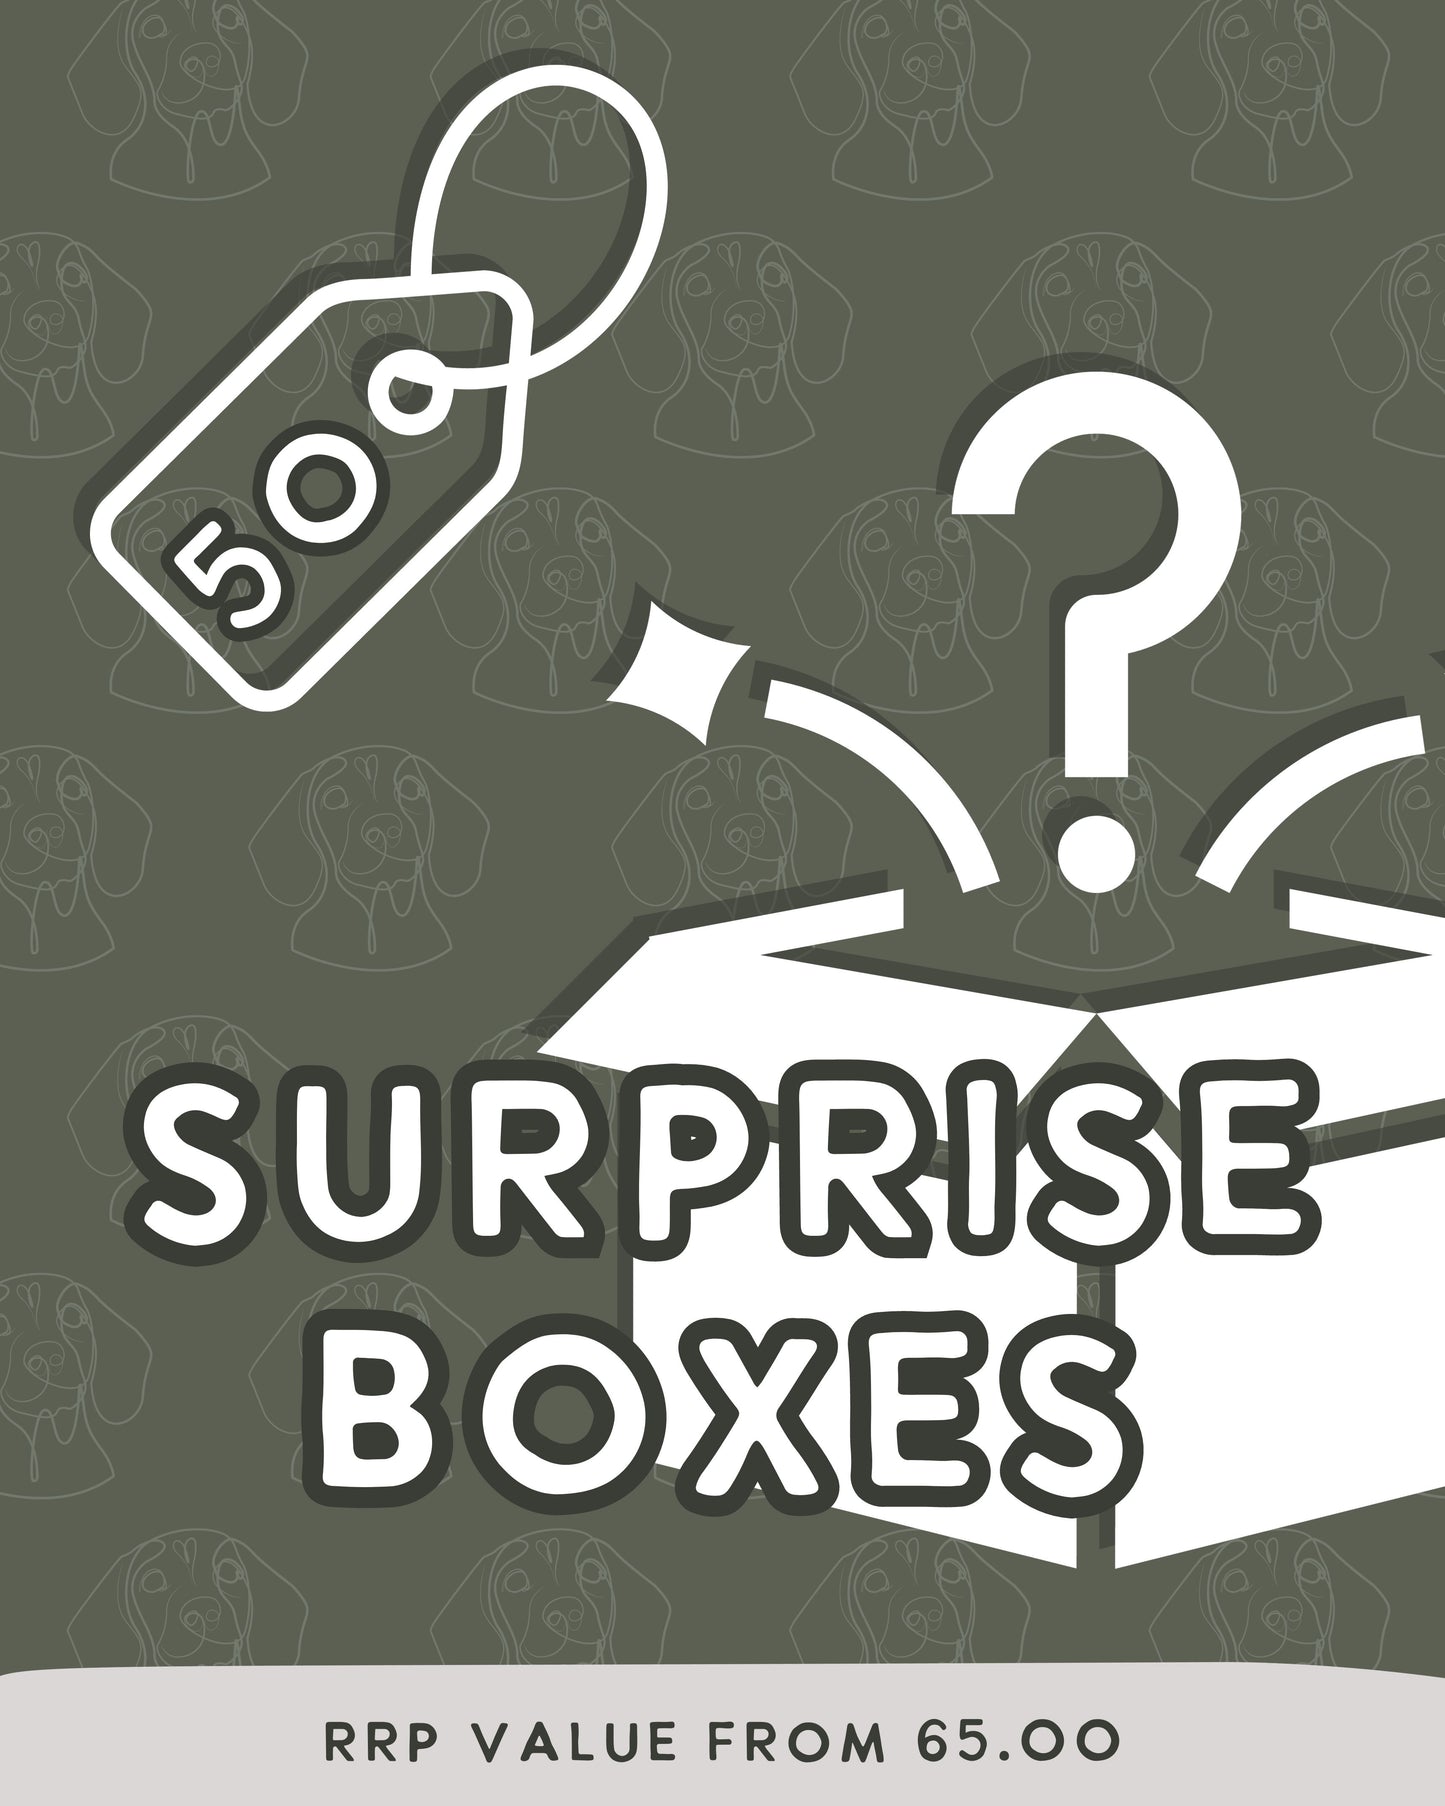 £50 Surprise Box